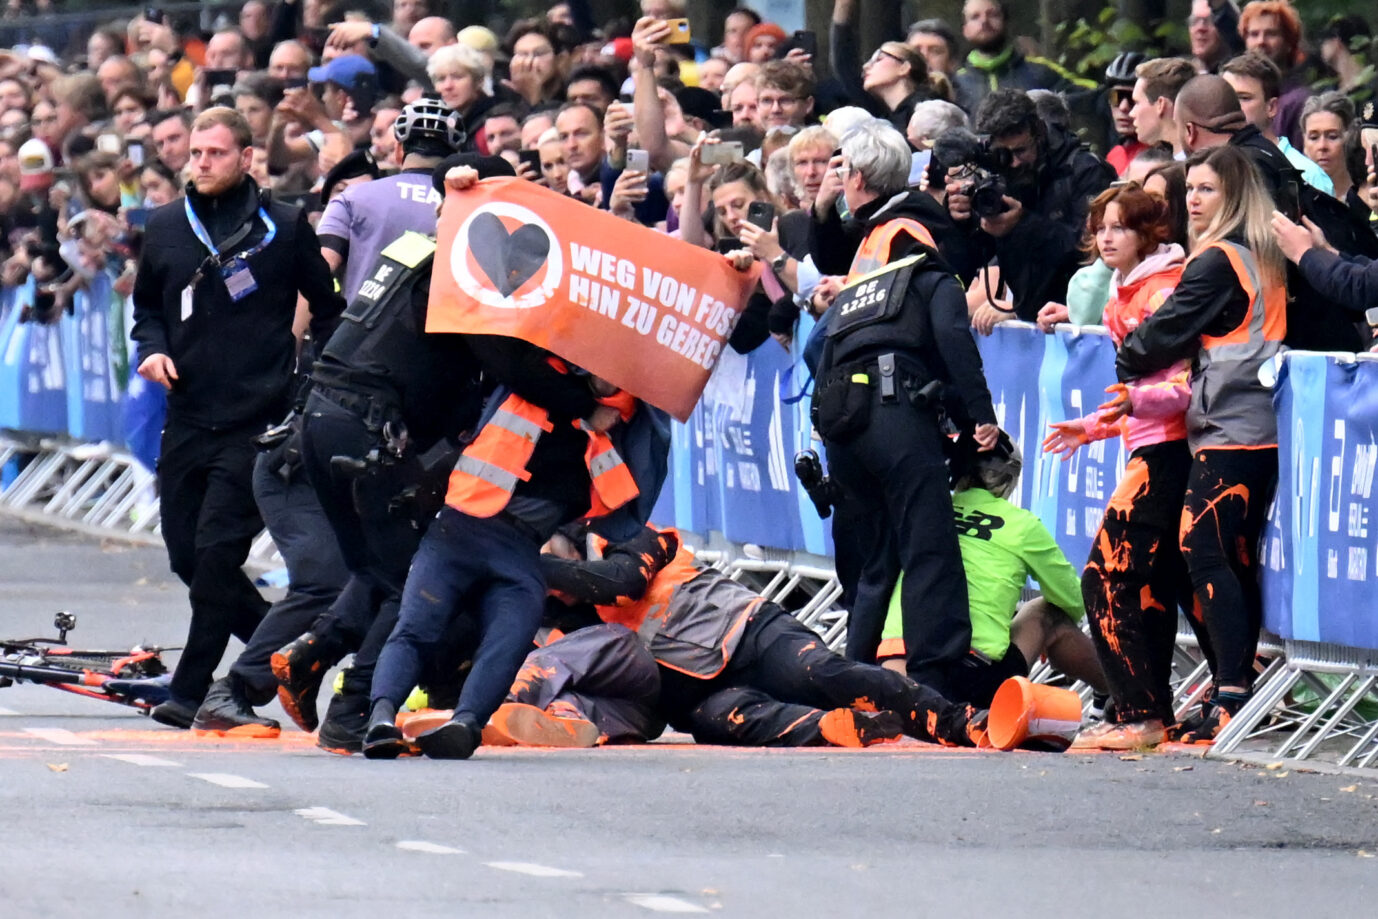 Dieses Bild zeigt eine Szene beim Berliner Marathon. Mitglieder der "Letzten Generation" werden bei einem Störungsversuch, bei dem sie orangefarbene Farbe verschütten, von Polizisten gestoppt.